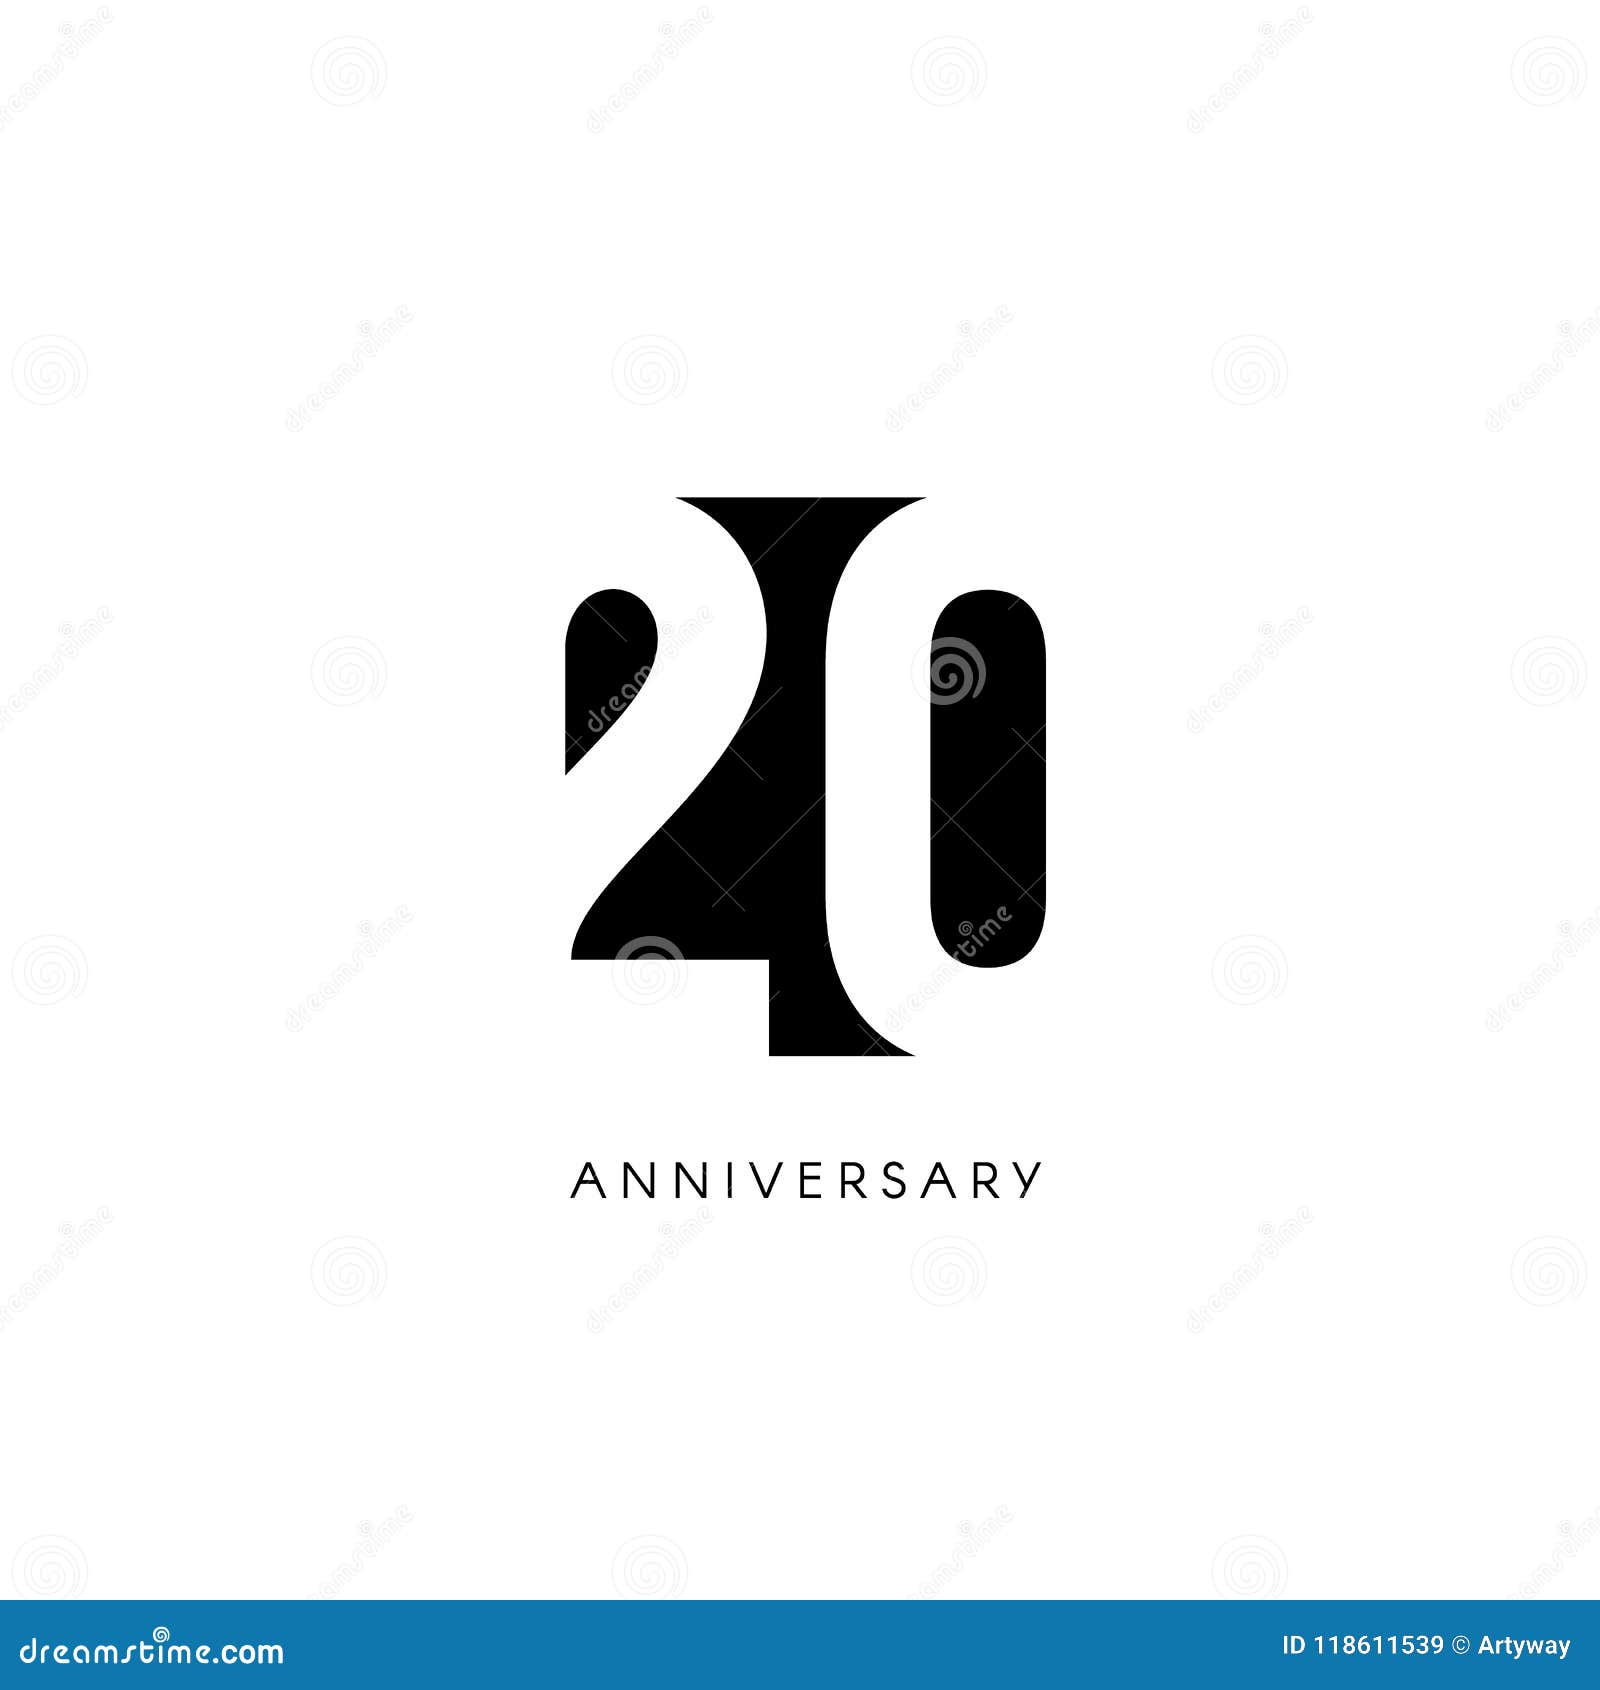 Vingt Anniversaire Logo Minimalistic Vingtieme Annees eme Jubile Carte De Voeux Invitation D Anniversaire Signe De Ans Illustration De Vecteur Illustration Du Jubile Signe